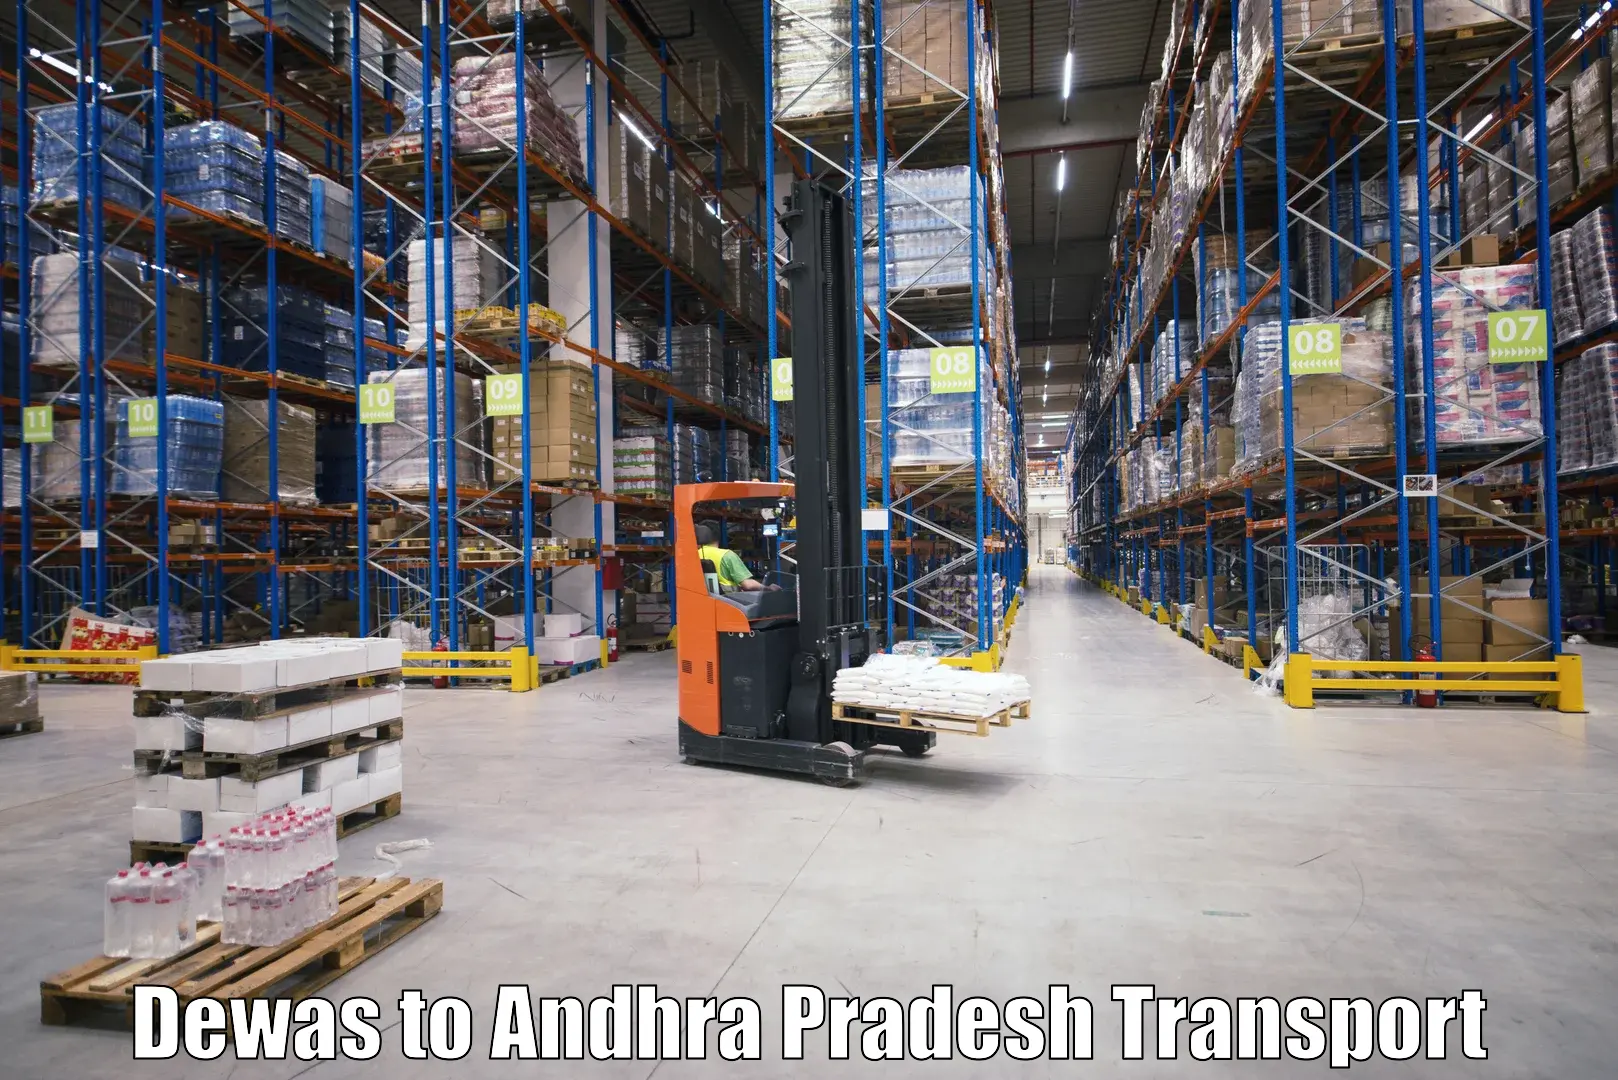 Vehicle parcel service Dewas to Andhra Pradesh